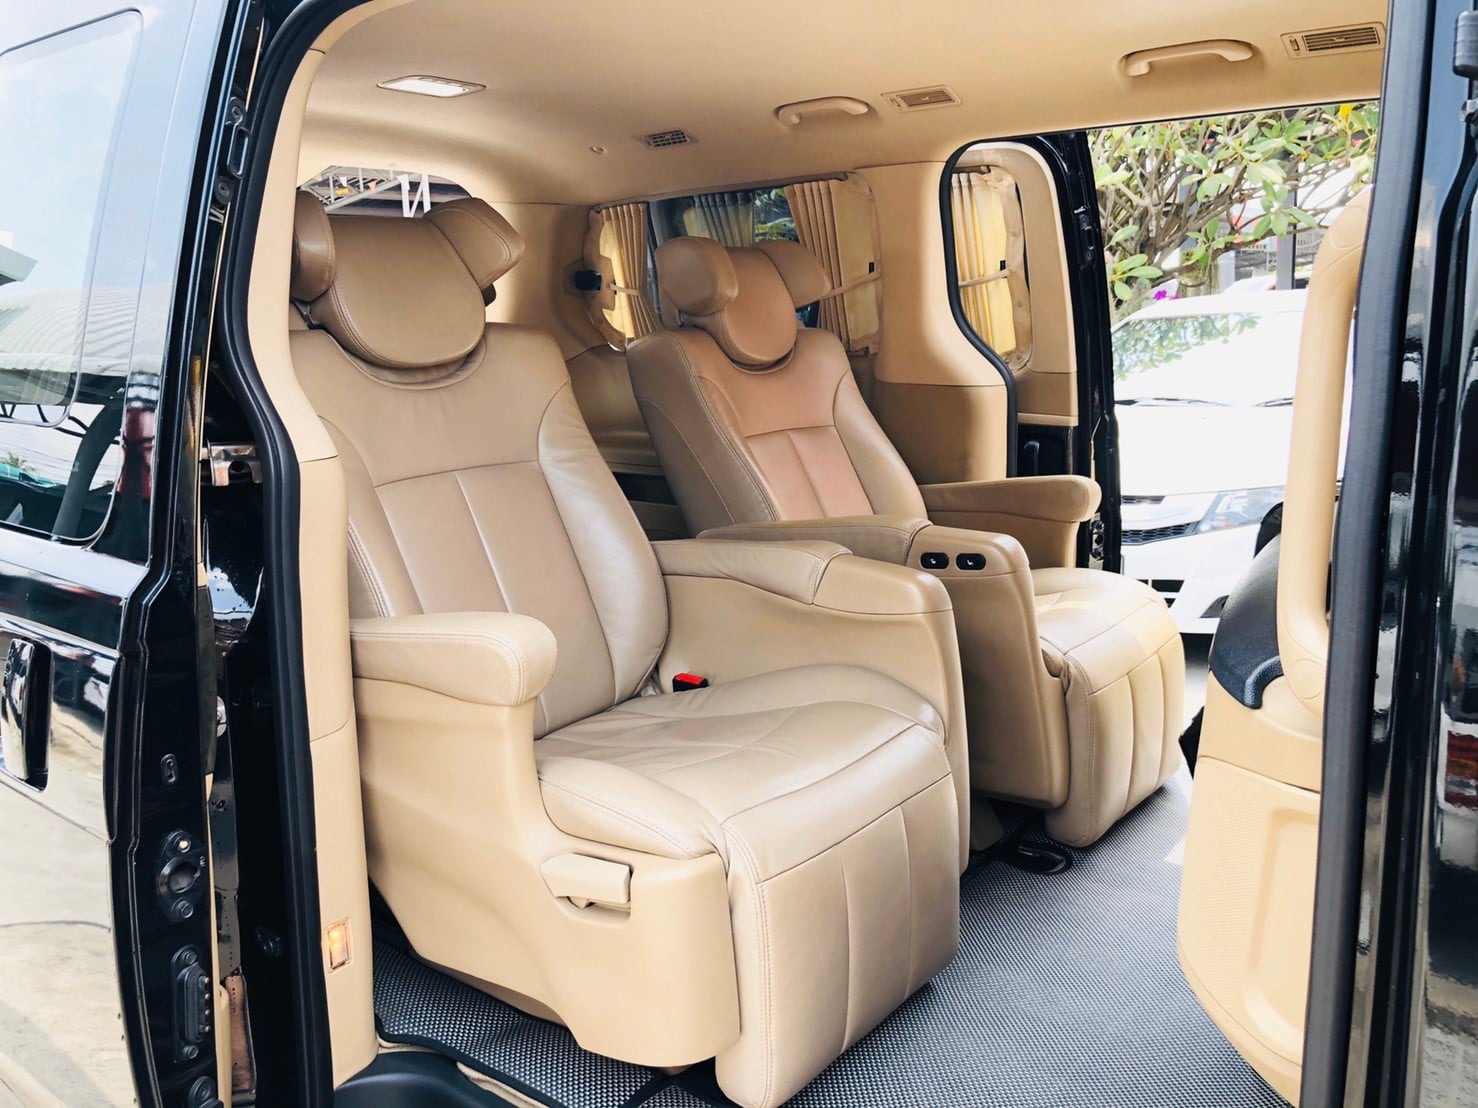 VIP. Van Service and Luxury Van